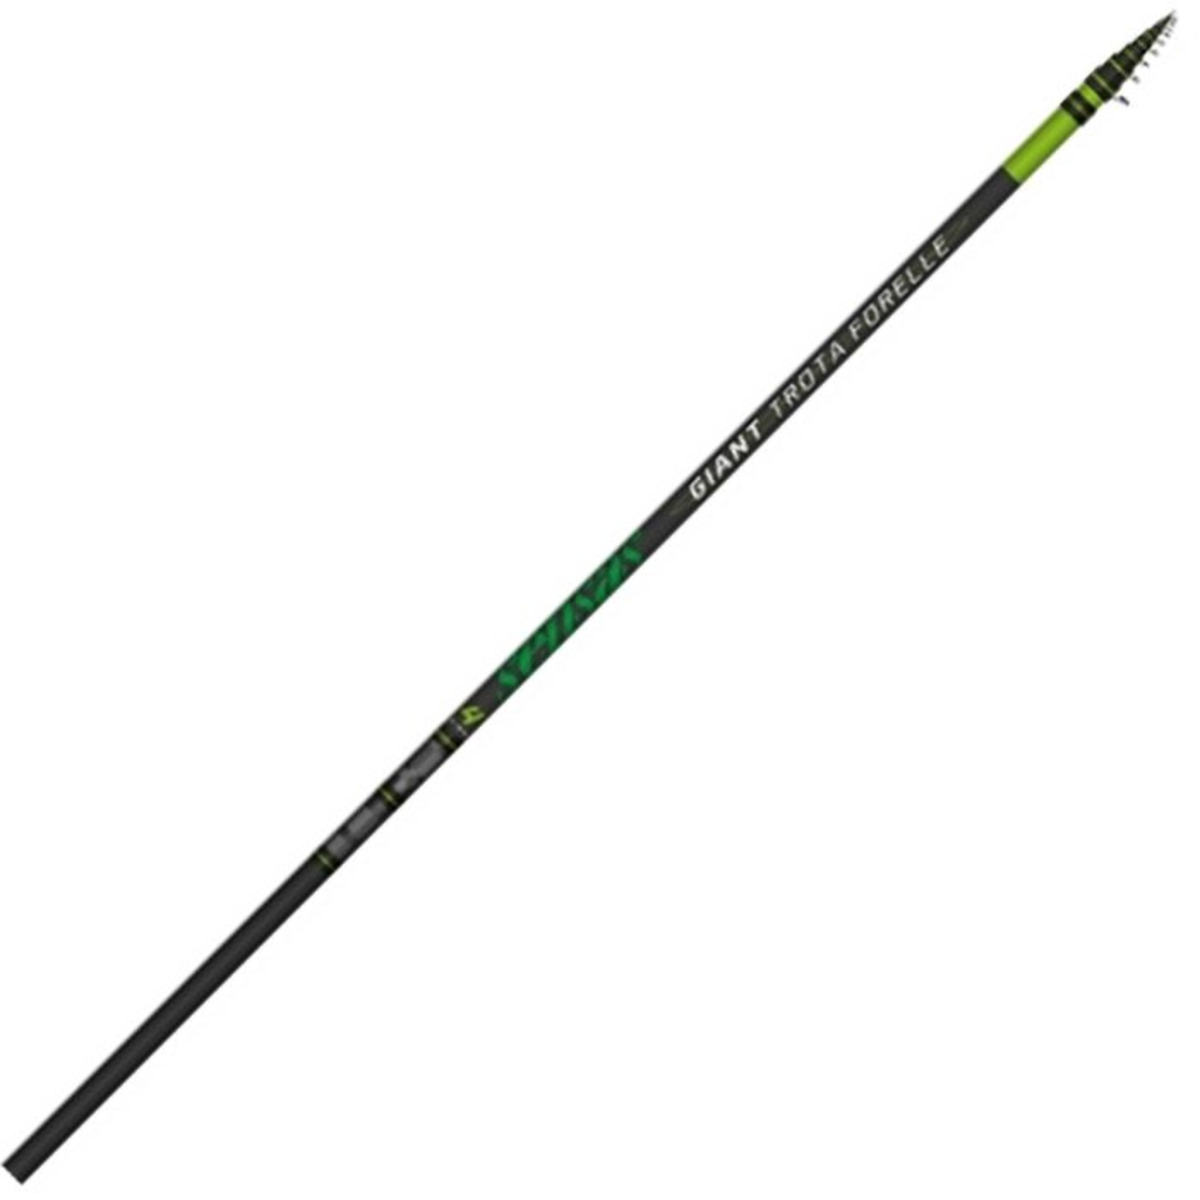 Sensas Giant trota Forelle Rod - 4.20 m - 8-15g 